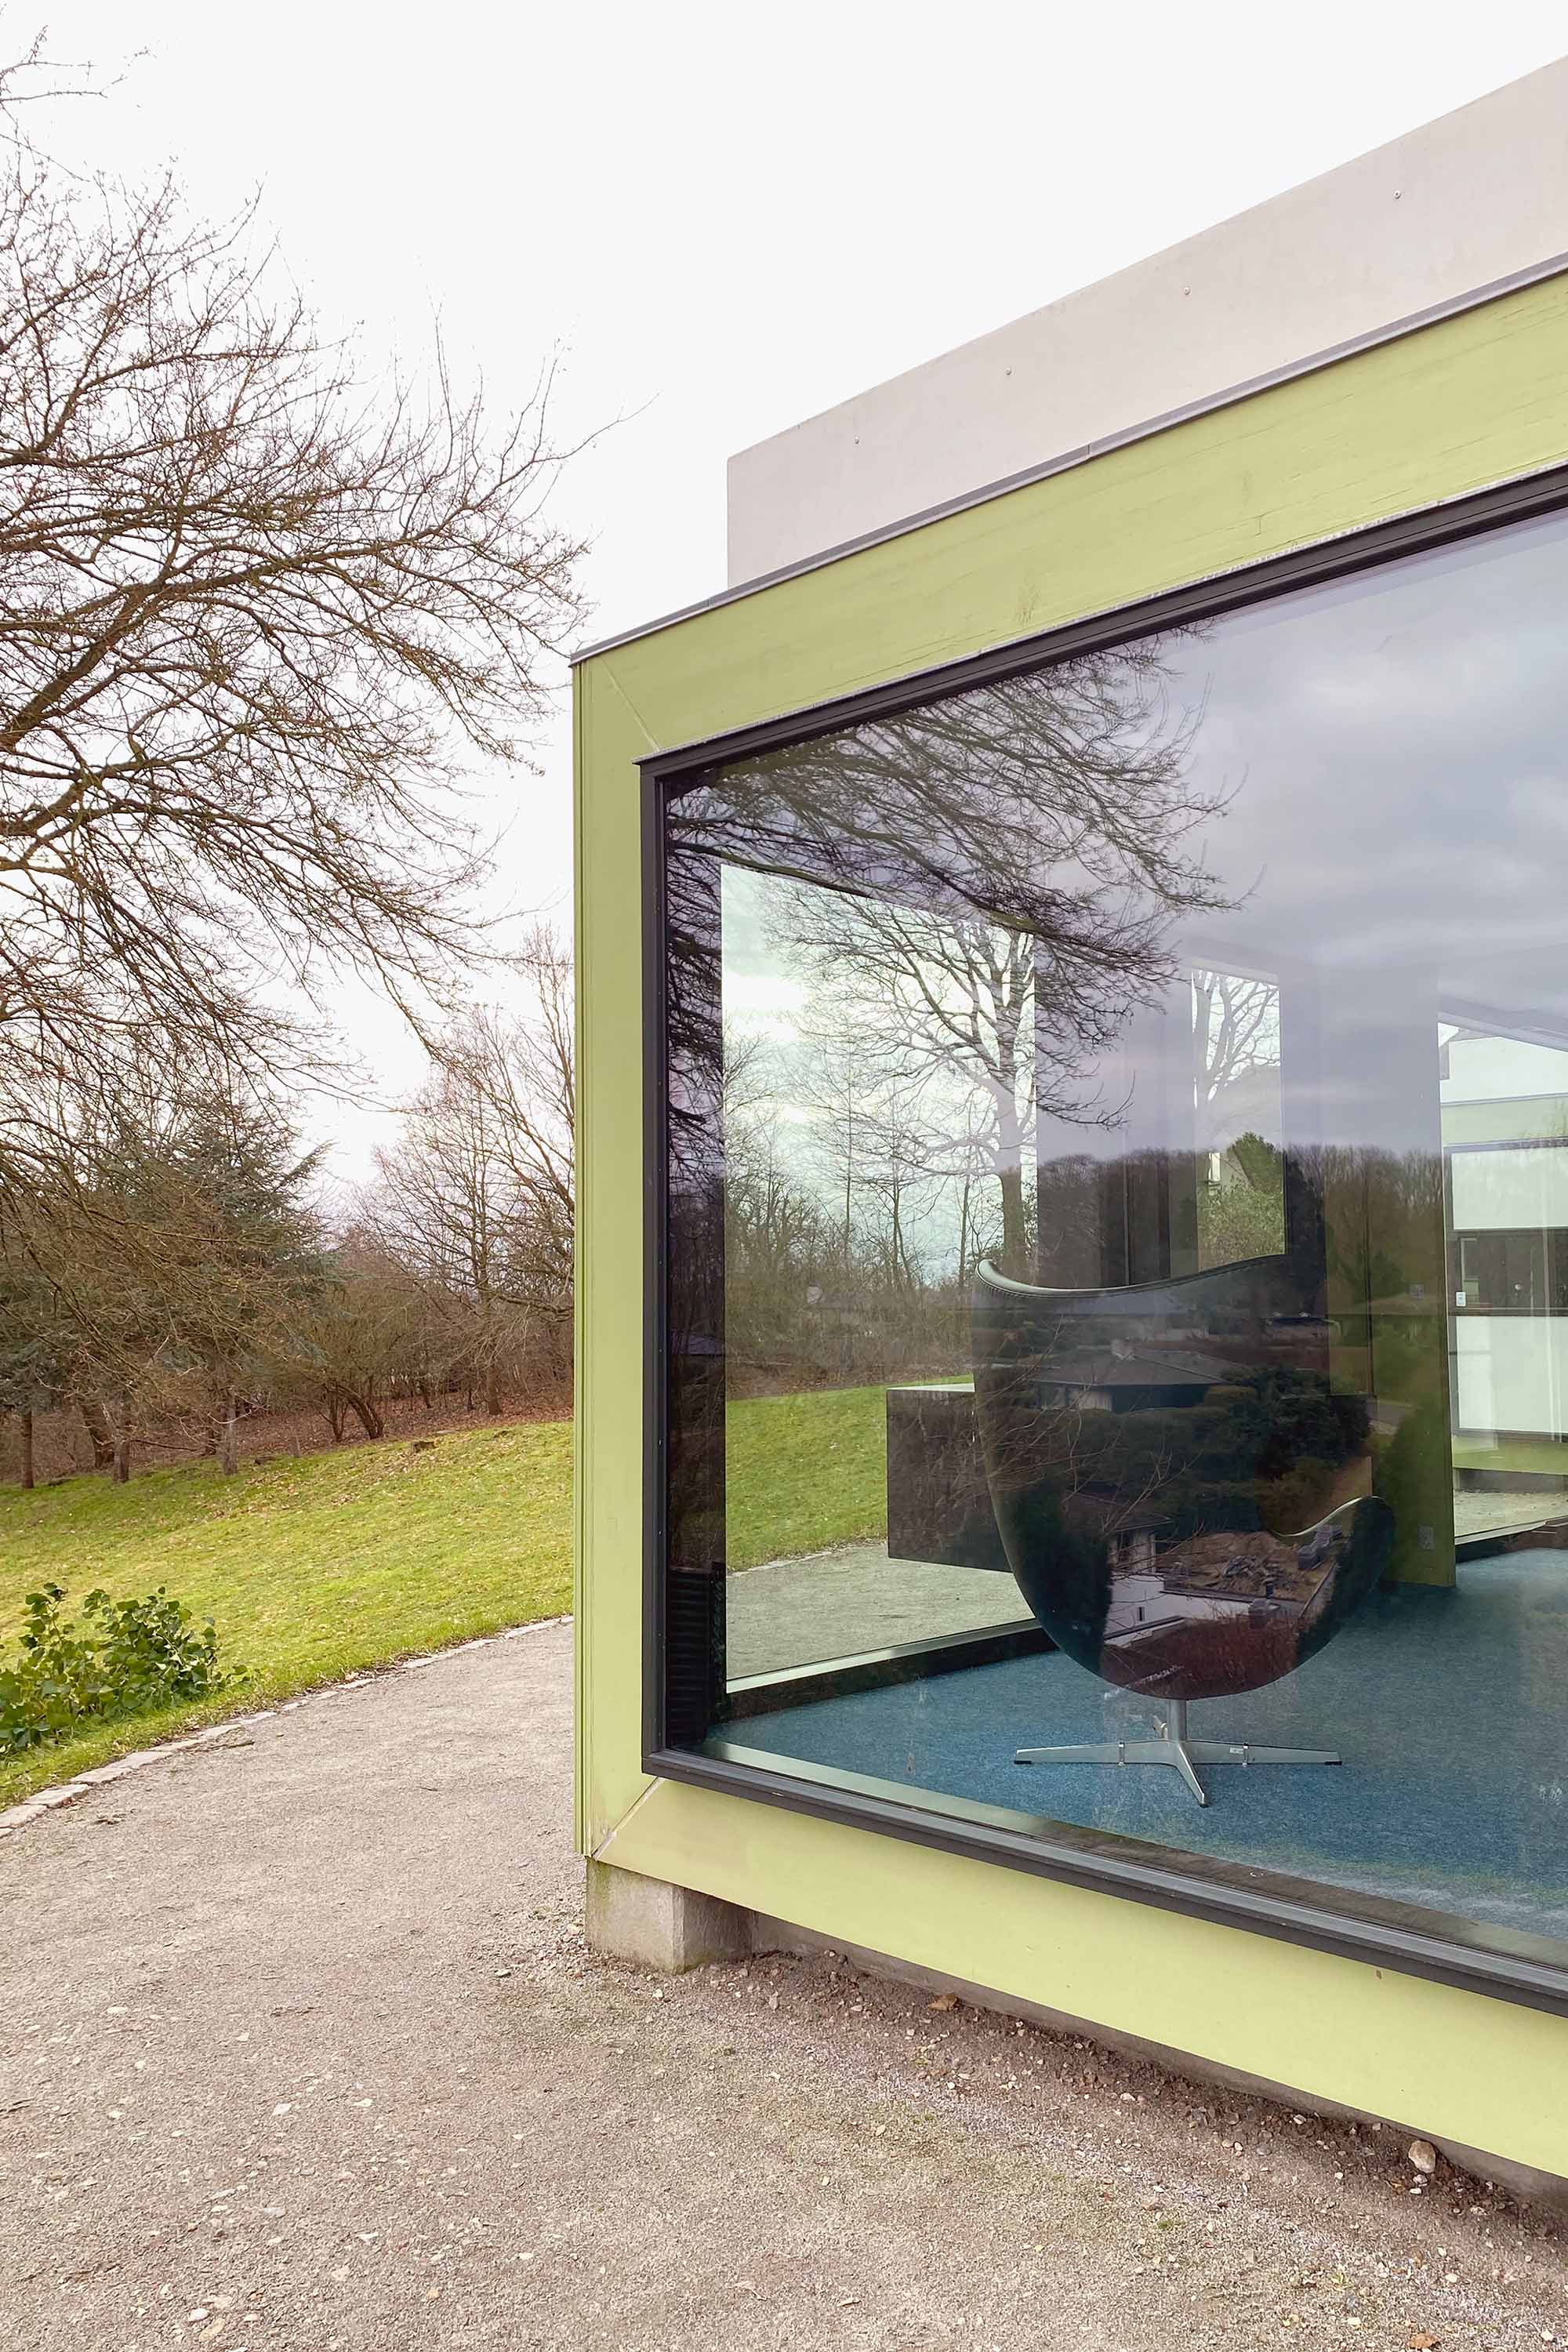 Das modulare Haus wurde 1970 von Arne Jacobsen entworfen und steht seit 2015 im Skulpturengarten des Trapholt Museums.